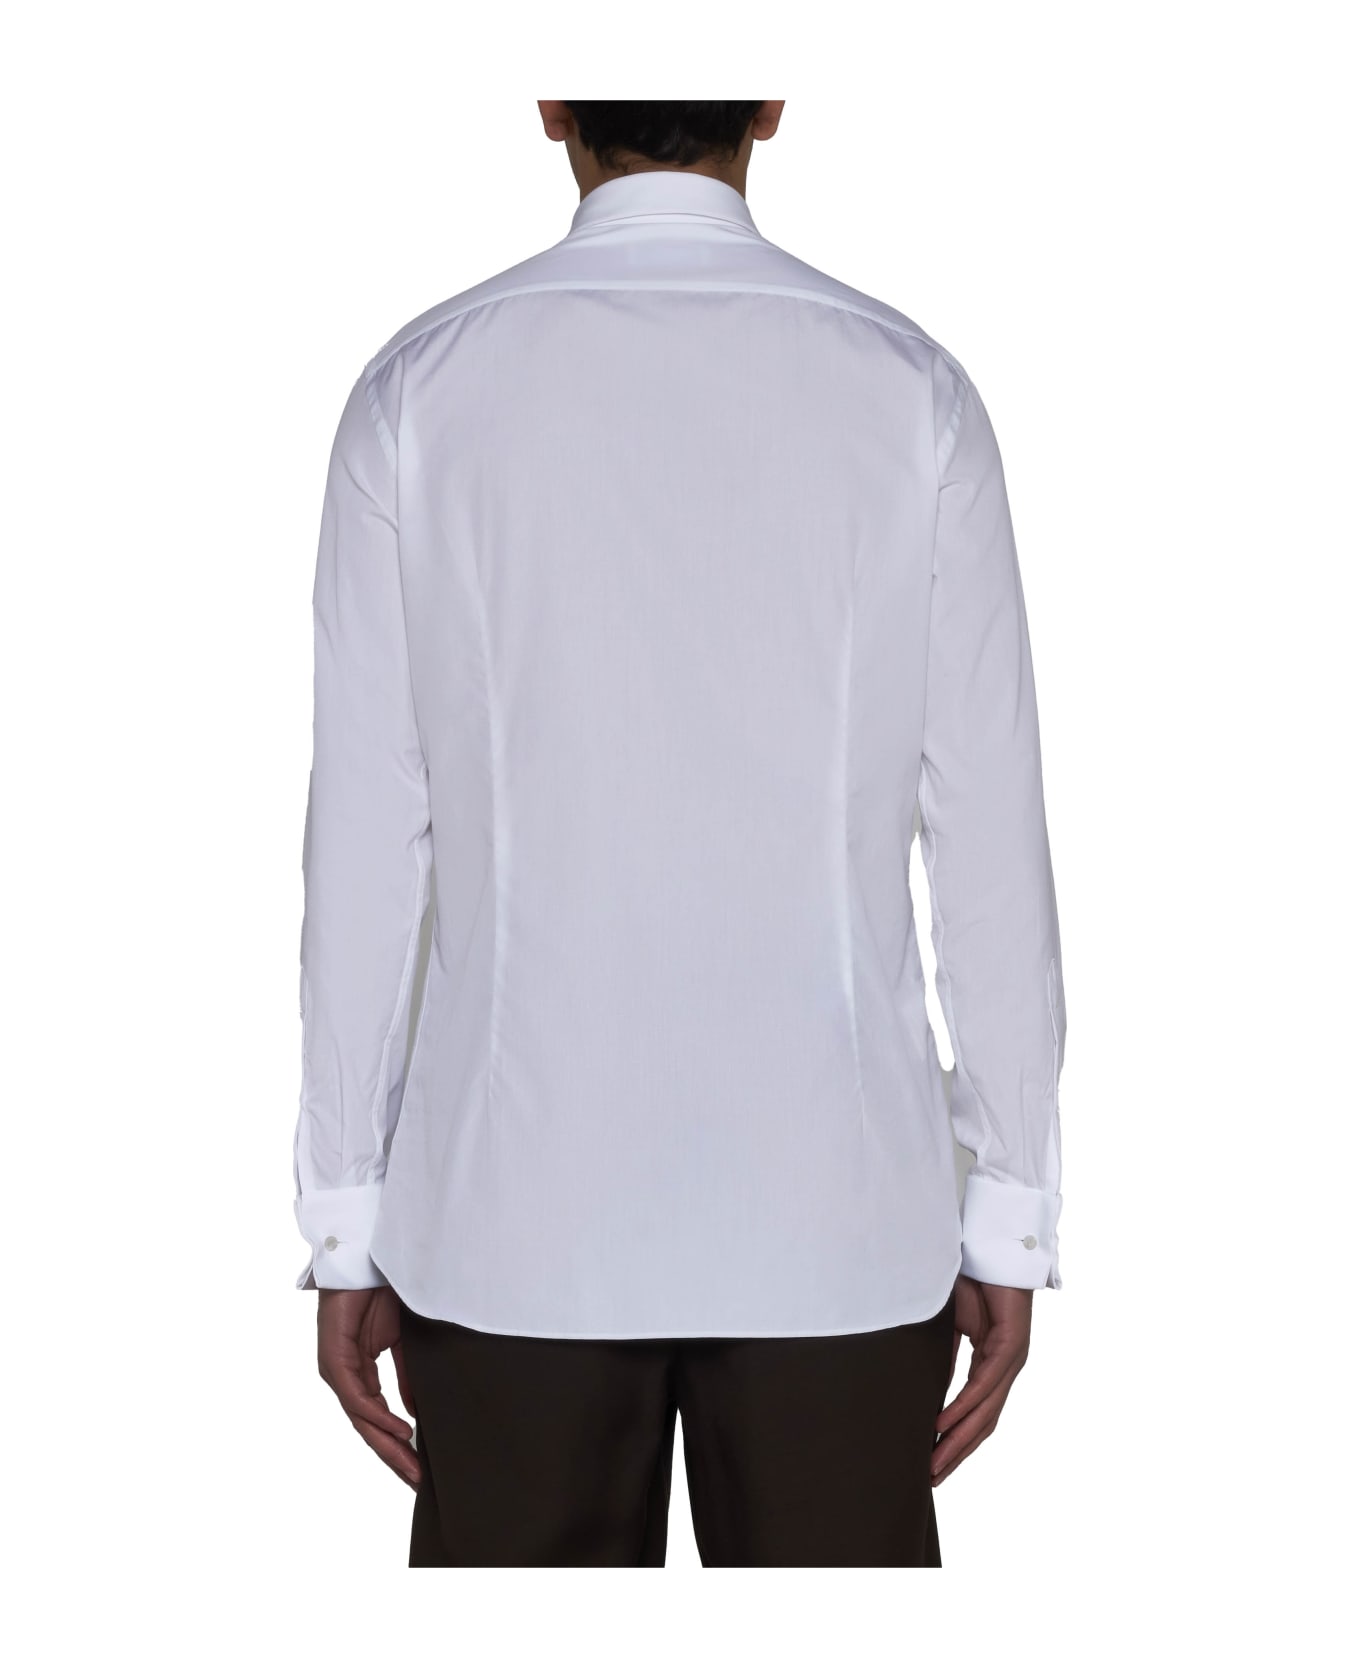 Lardini White Cotton Shirt - 100 シャツ